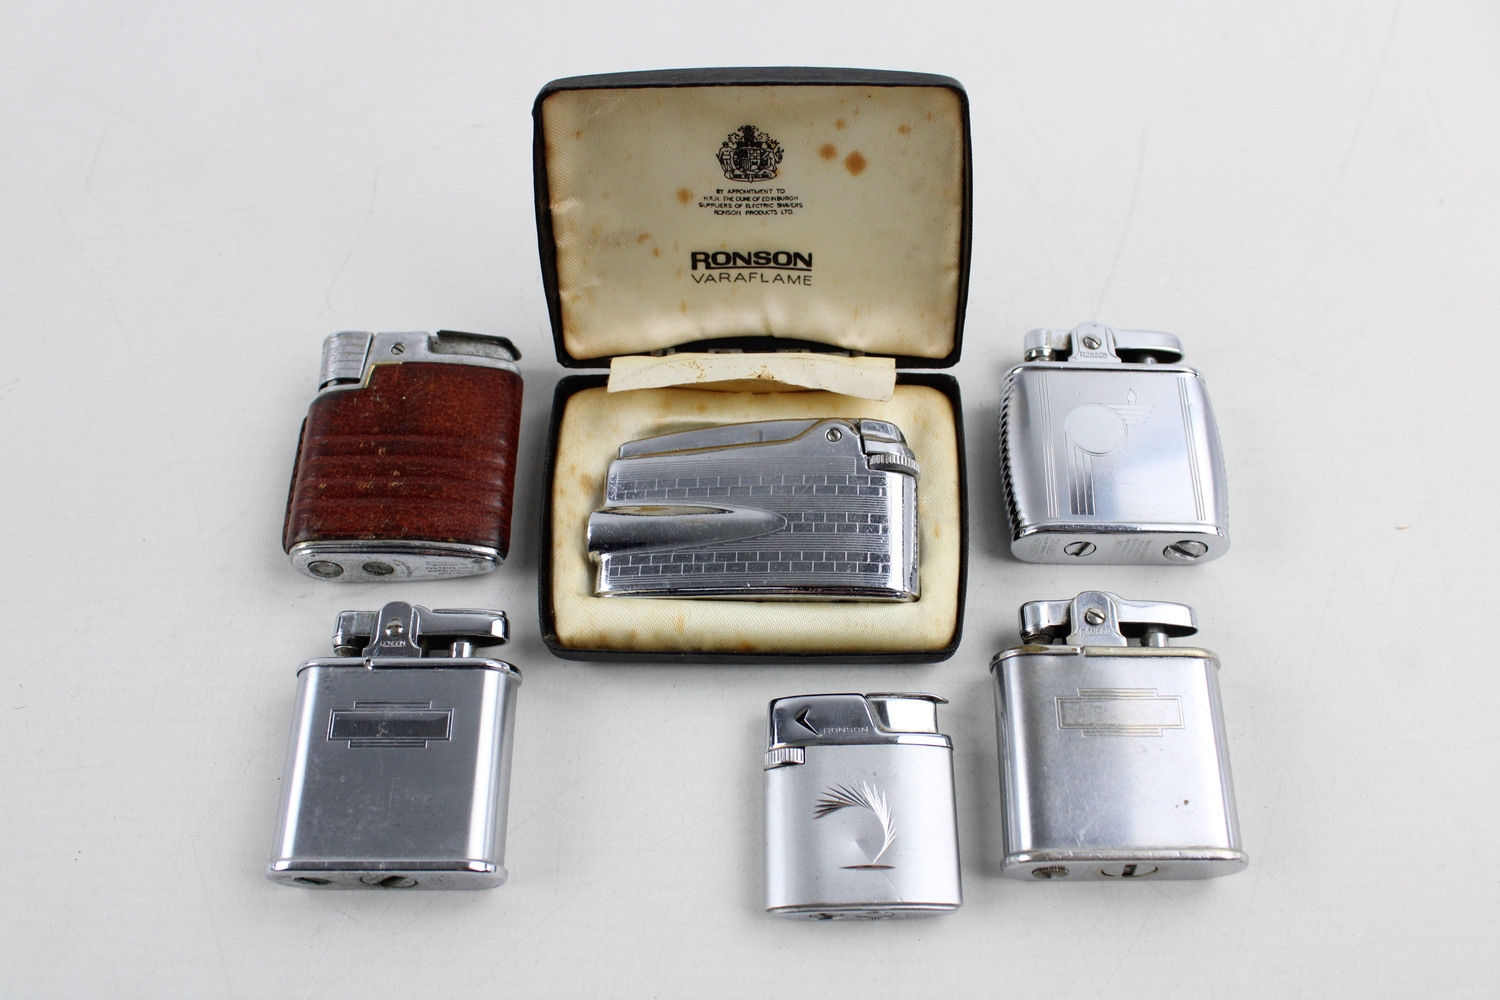 Mistillid retort begrænse 6 x Vintage RONSON Cigarette LIGHTERS Inc Boxed, Varaflame, Viking, Leather  Etc